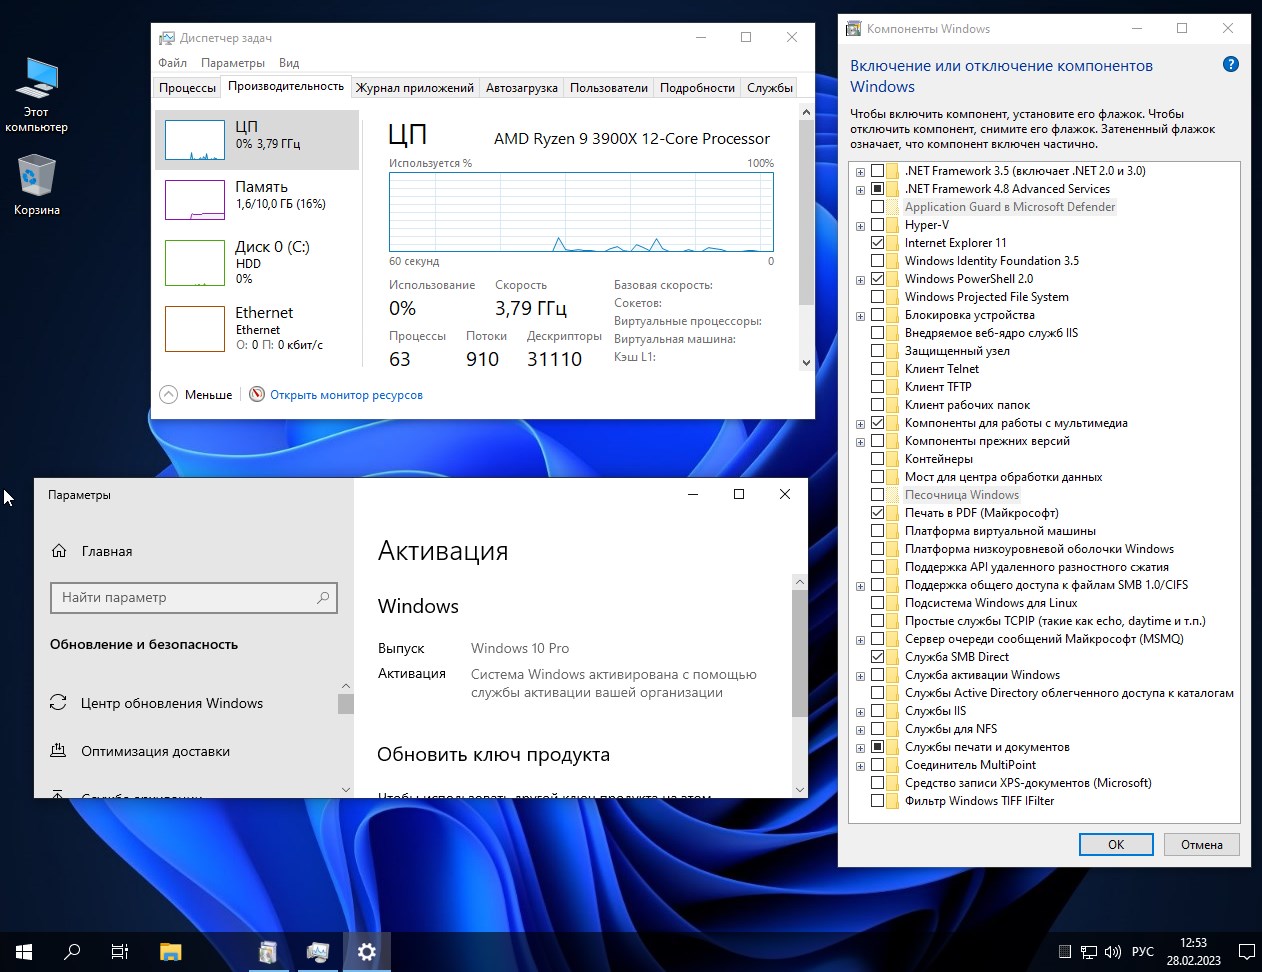  Скачать Windows 10 Rus x64 22H2 2023 FULL build 19045.2673 без торрент 3 GB